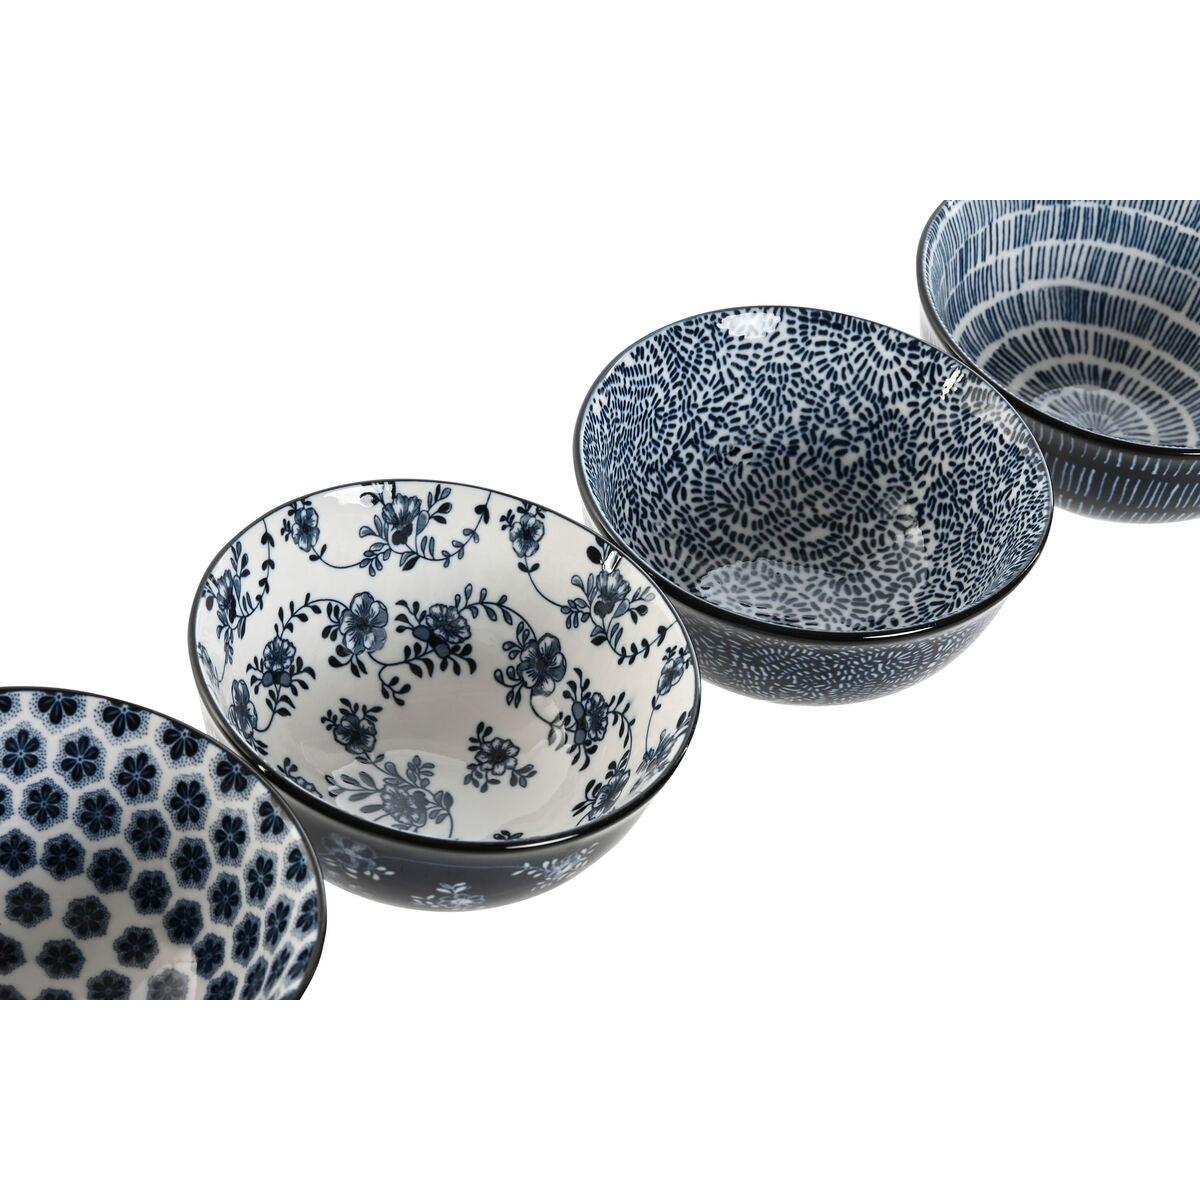 Set of bowls Home ESPRIT Blue White Porcelain Shabby Chic 11,5 x 11,5 x 6 cm